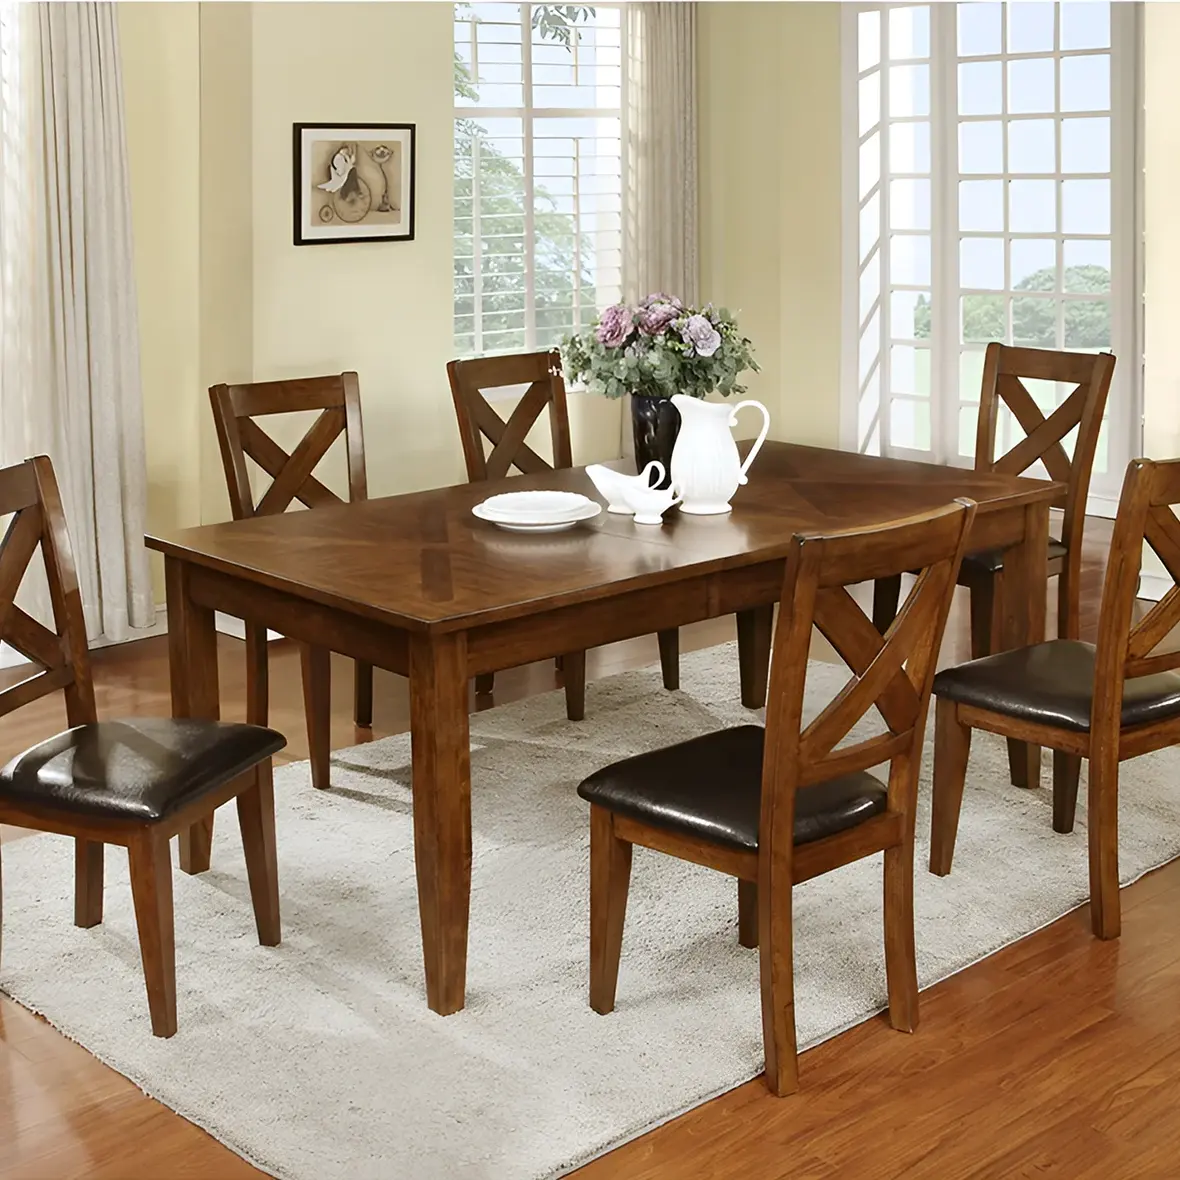 7-Piece Modern yemek masası seti MDF ahşap tarzı otel veya mutfak ev kullanımı için geniş ve rahat koltuklar sağlayan